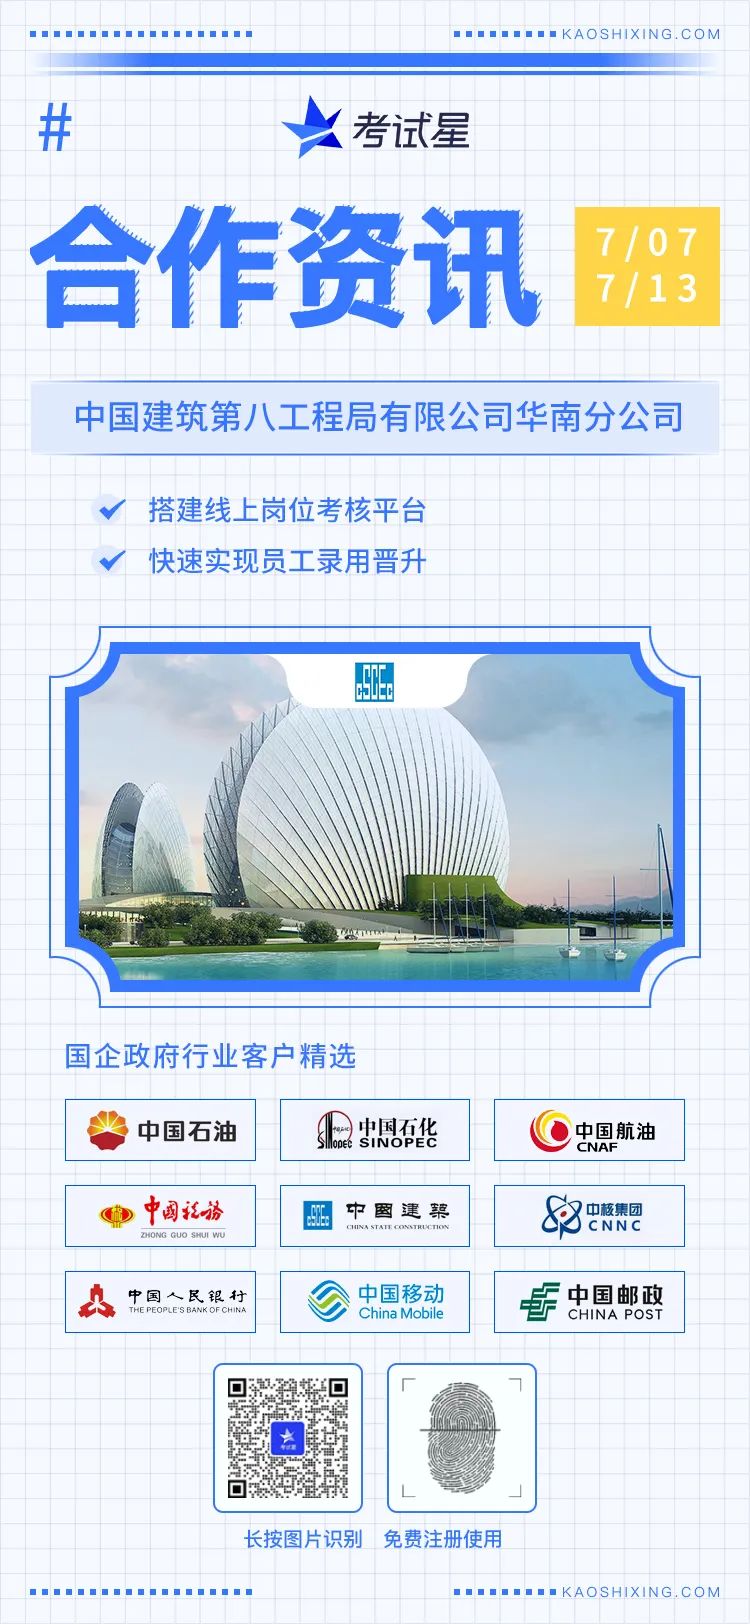 中国建筑第八工程局有限公司华南分公司-考试星线上岗位考核平台